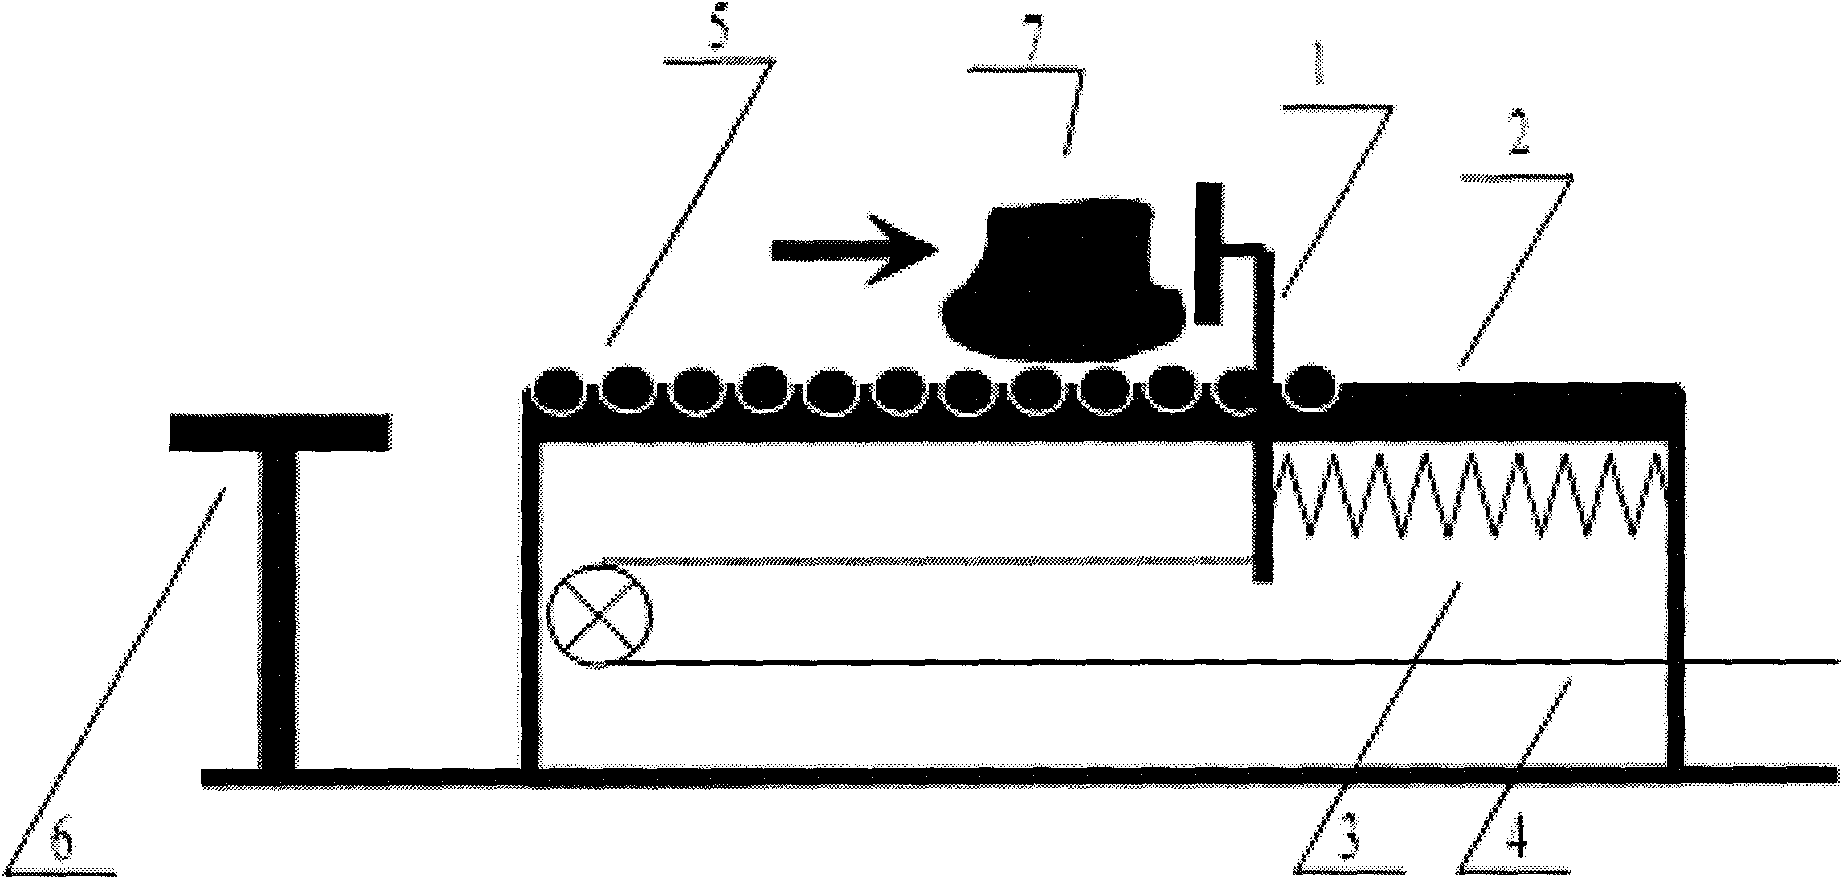 Locomotive accelerator pedal device